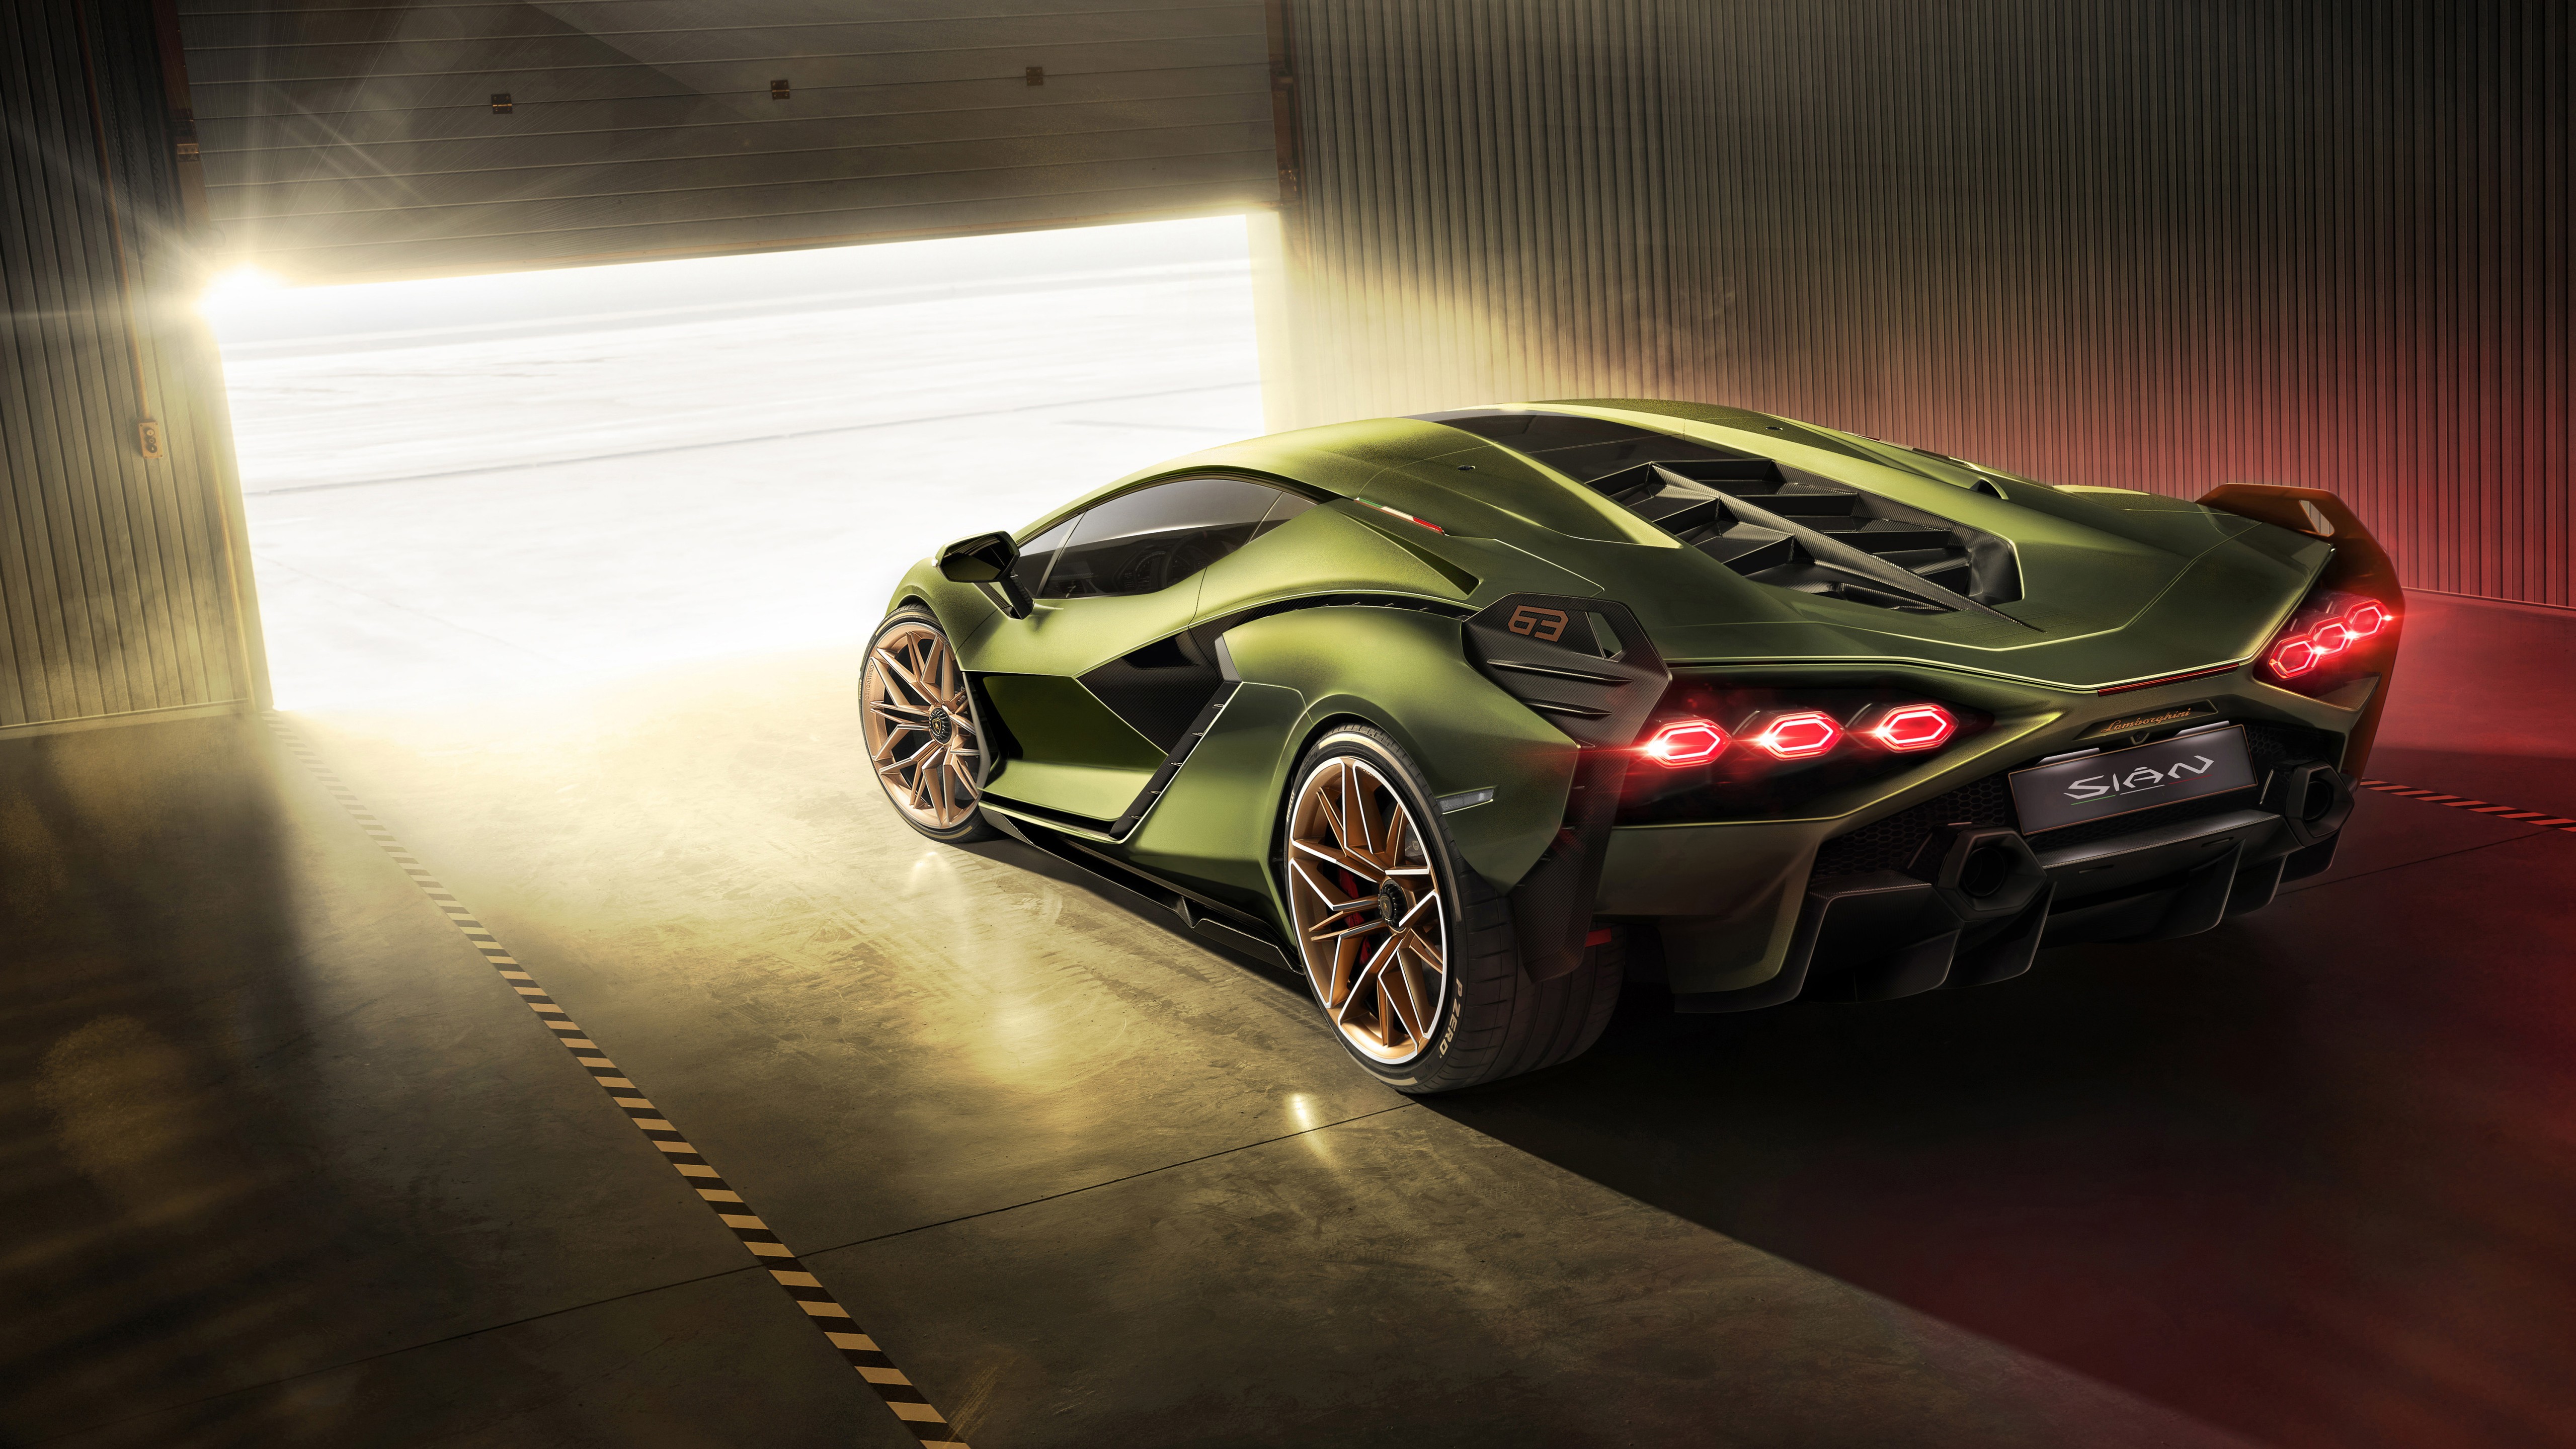 Lamborghini Sian 2019 4K 3 Wallpaper | HD Car Wallpapers | ID #13141